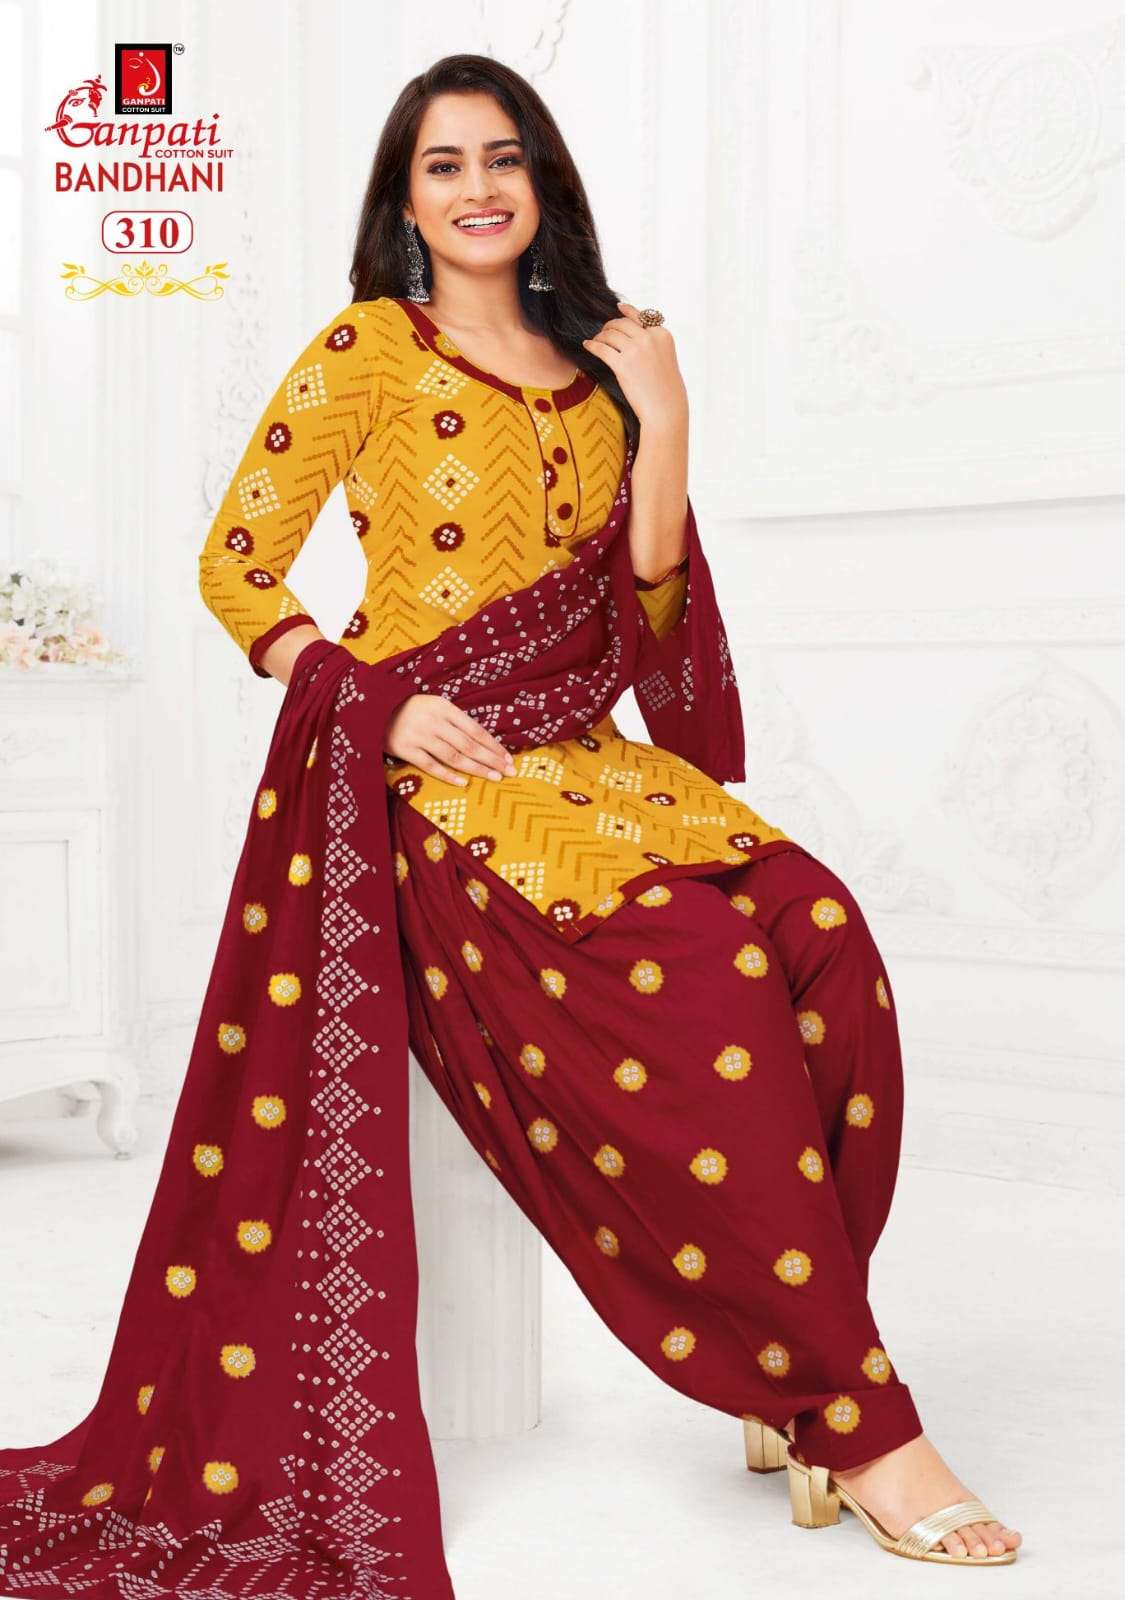 ganpati cotton suit bandhani vol 3 301-312 series patiyala salwar kameez 